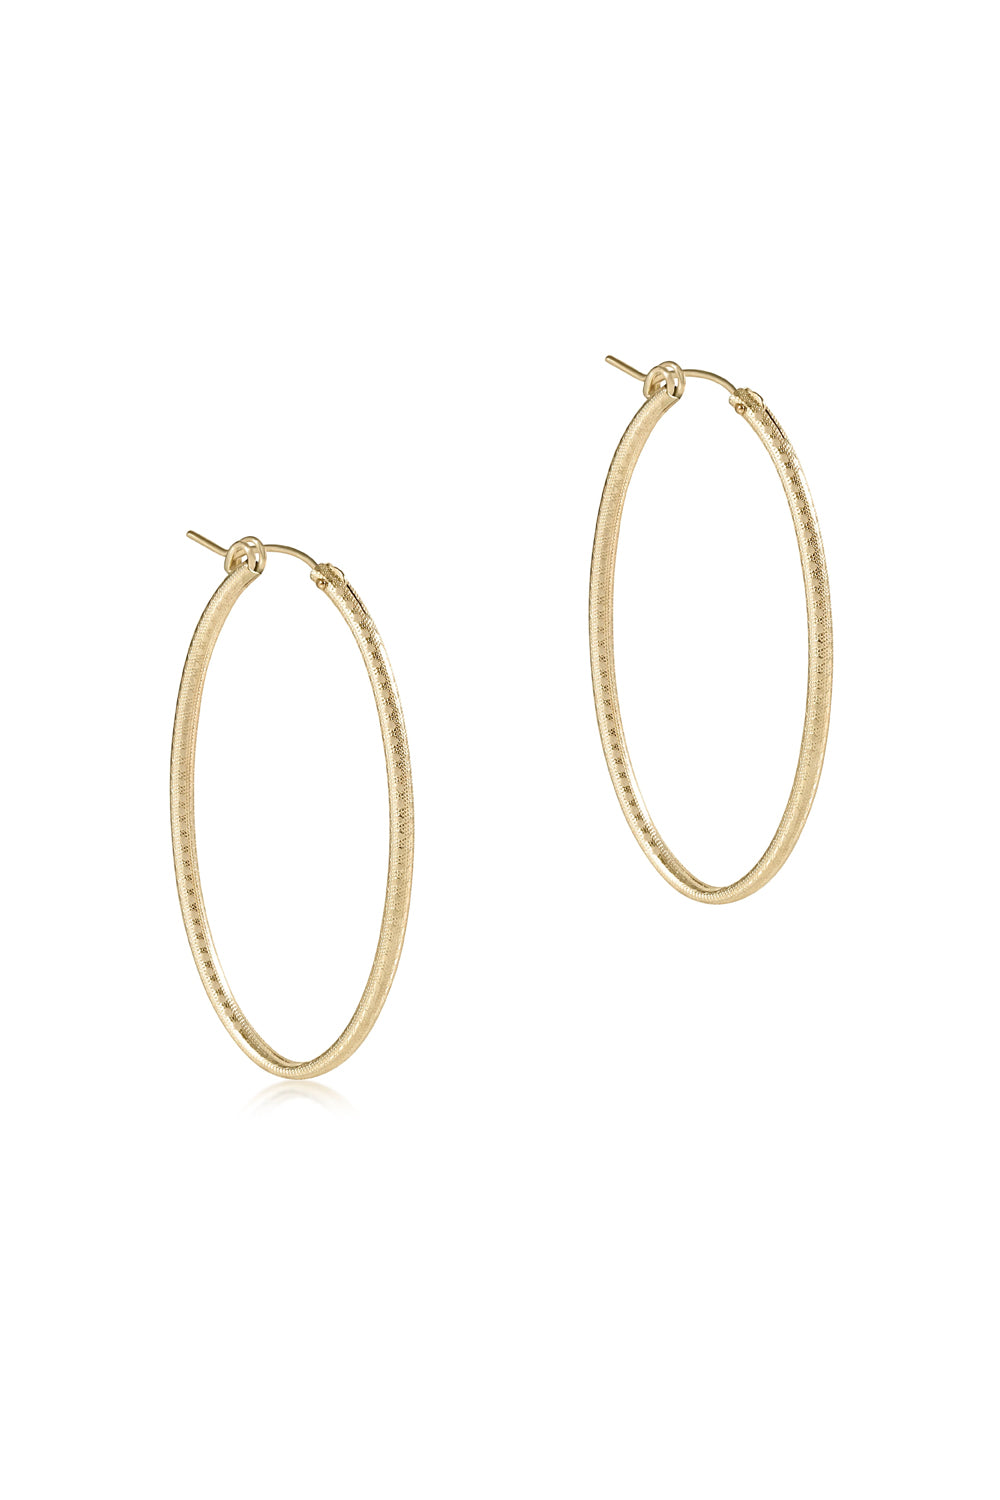 enewton: Oval Gold 2" Textured Hoop Earrings | Makk Fashions